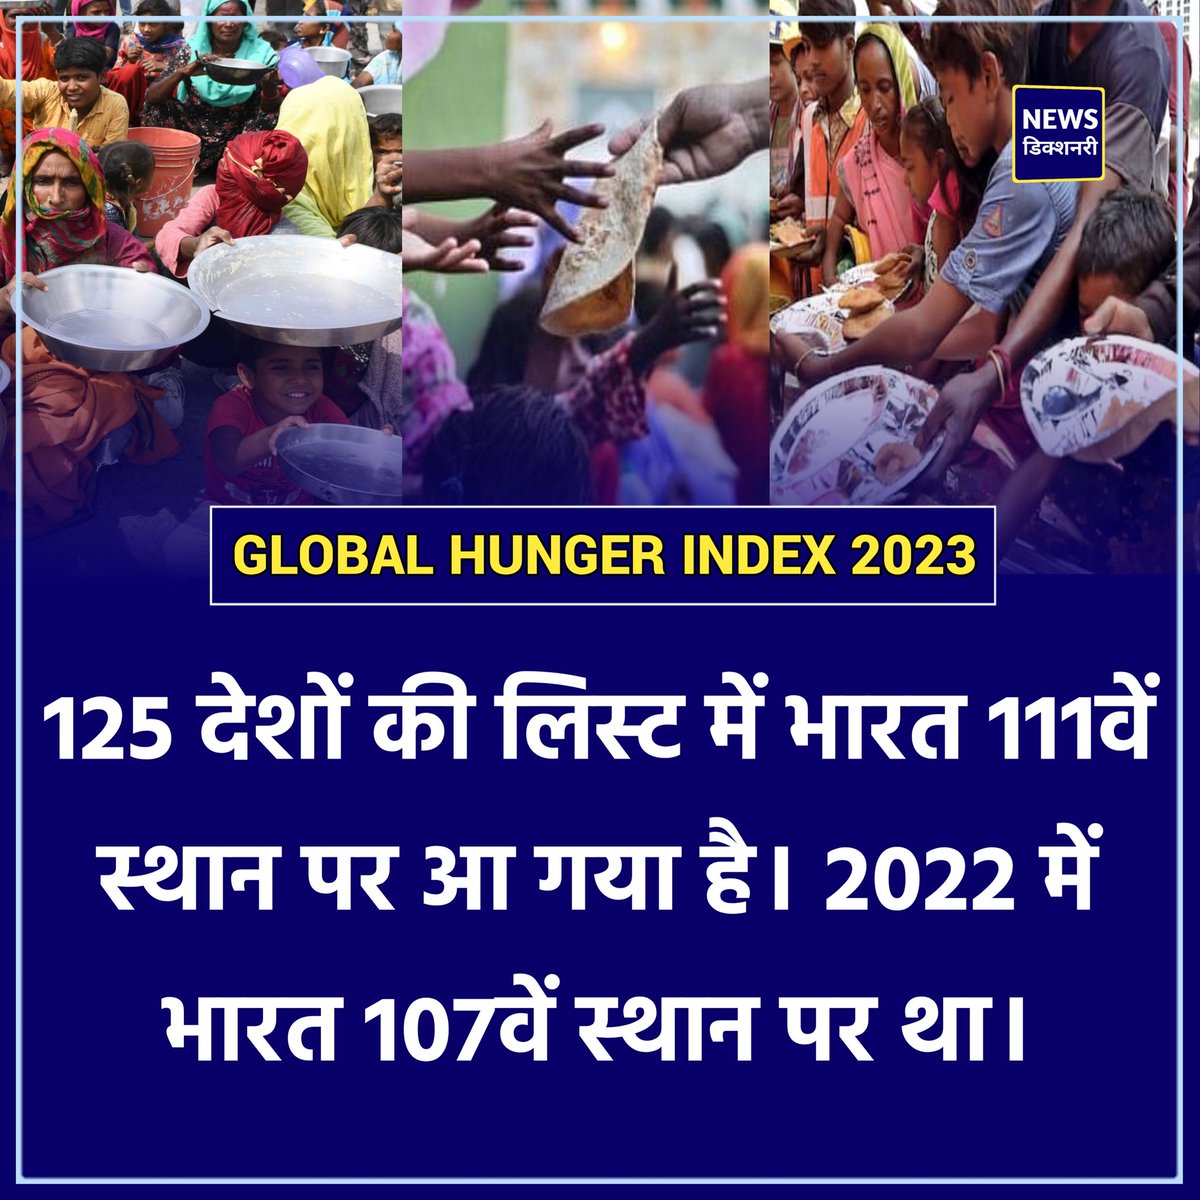 Global Hunger Index 2023

ग्लोबल हंगर इंडेक्स में भारत 111वें स्थान पर 

पाकिस्तान, बांग्लादेश, नेपाल से भी है पीछे

125 देशों की ग्लोबल हंगर इंडेक्स में भारत 111वें स्थान पर आ गया है। 

#HungerIndex l India l #GHI2023
#GlobalHungerIndex l #Nepal